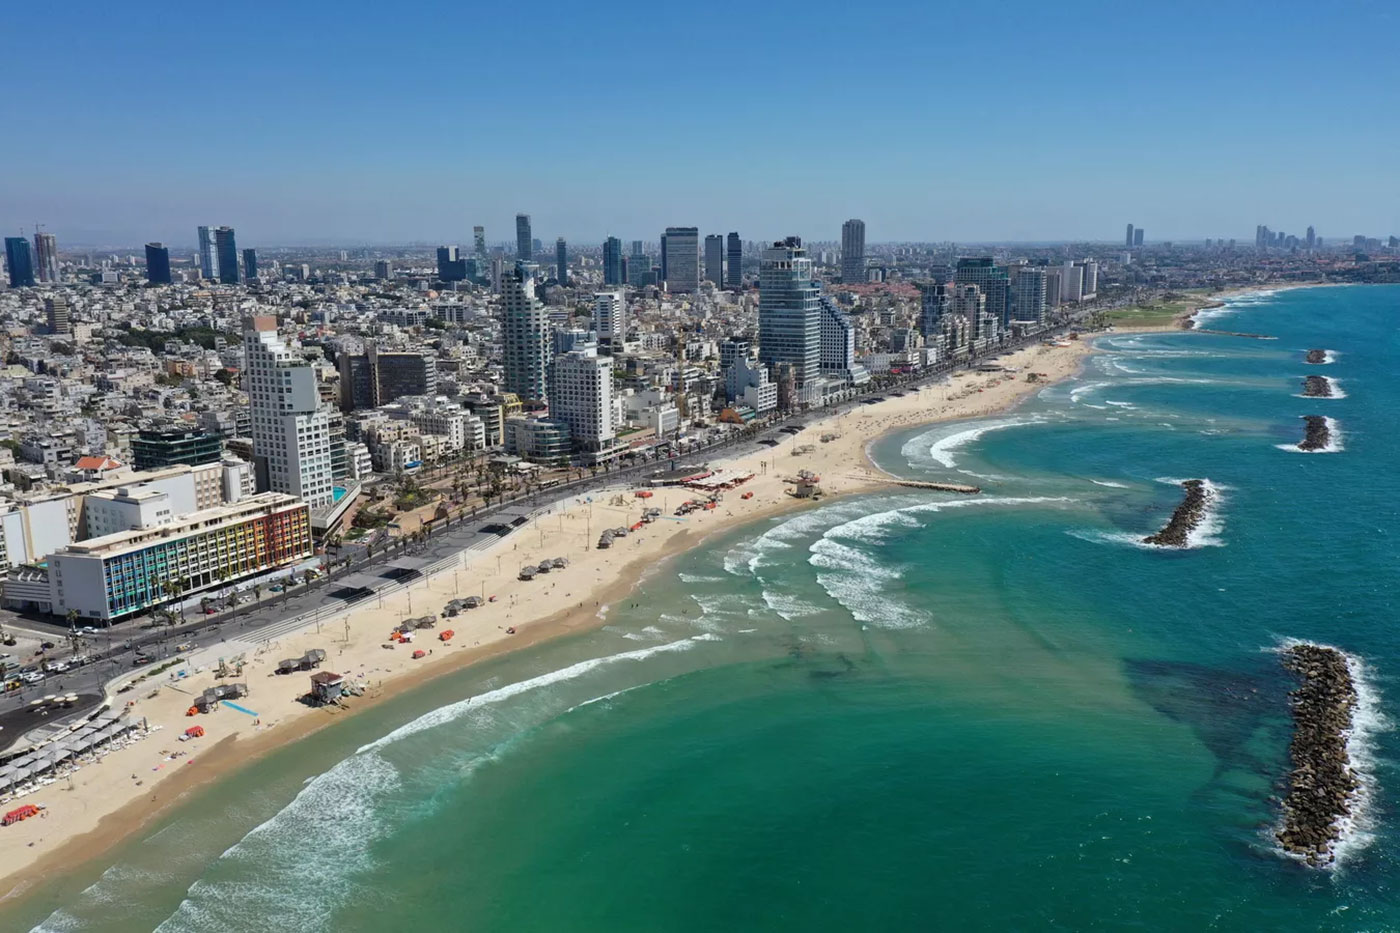 الحكومة الإسرائيلية تدعو لتجنب استقدام السياح وعلى الموجودين ملازمة الفنادق